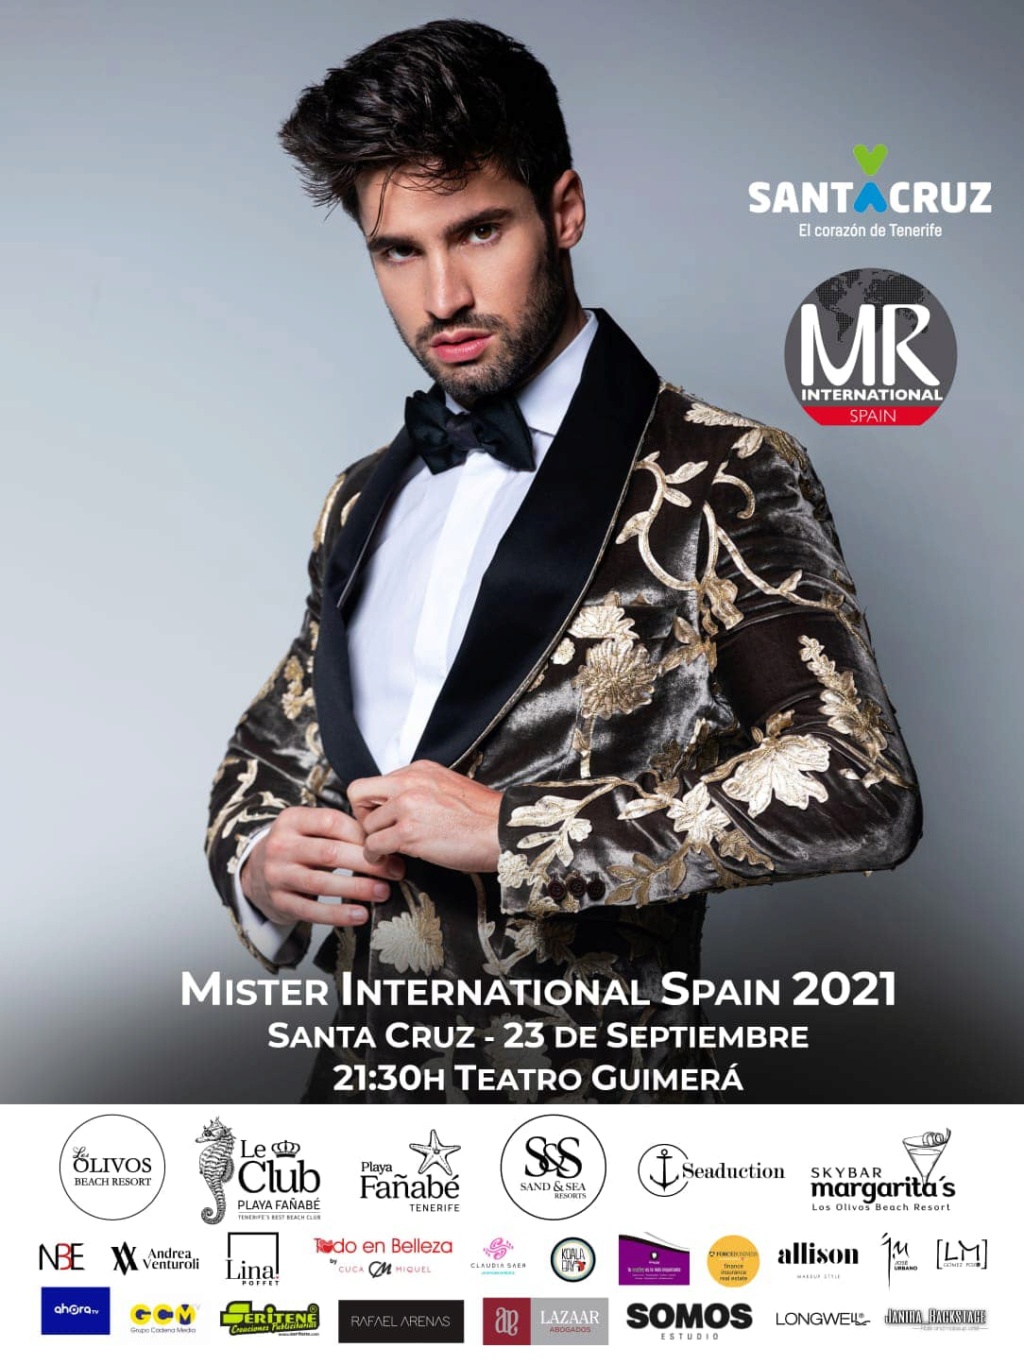 Mister Internacional España 2021 is MALAGA Alexander Calvo - Page 2 22416310